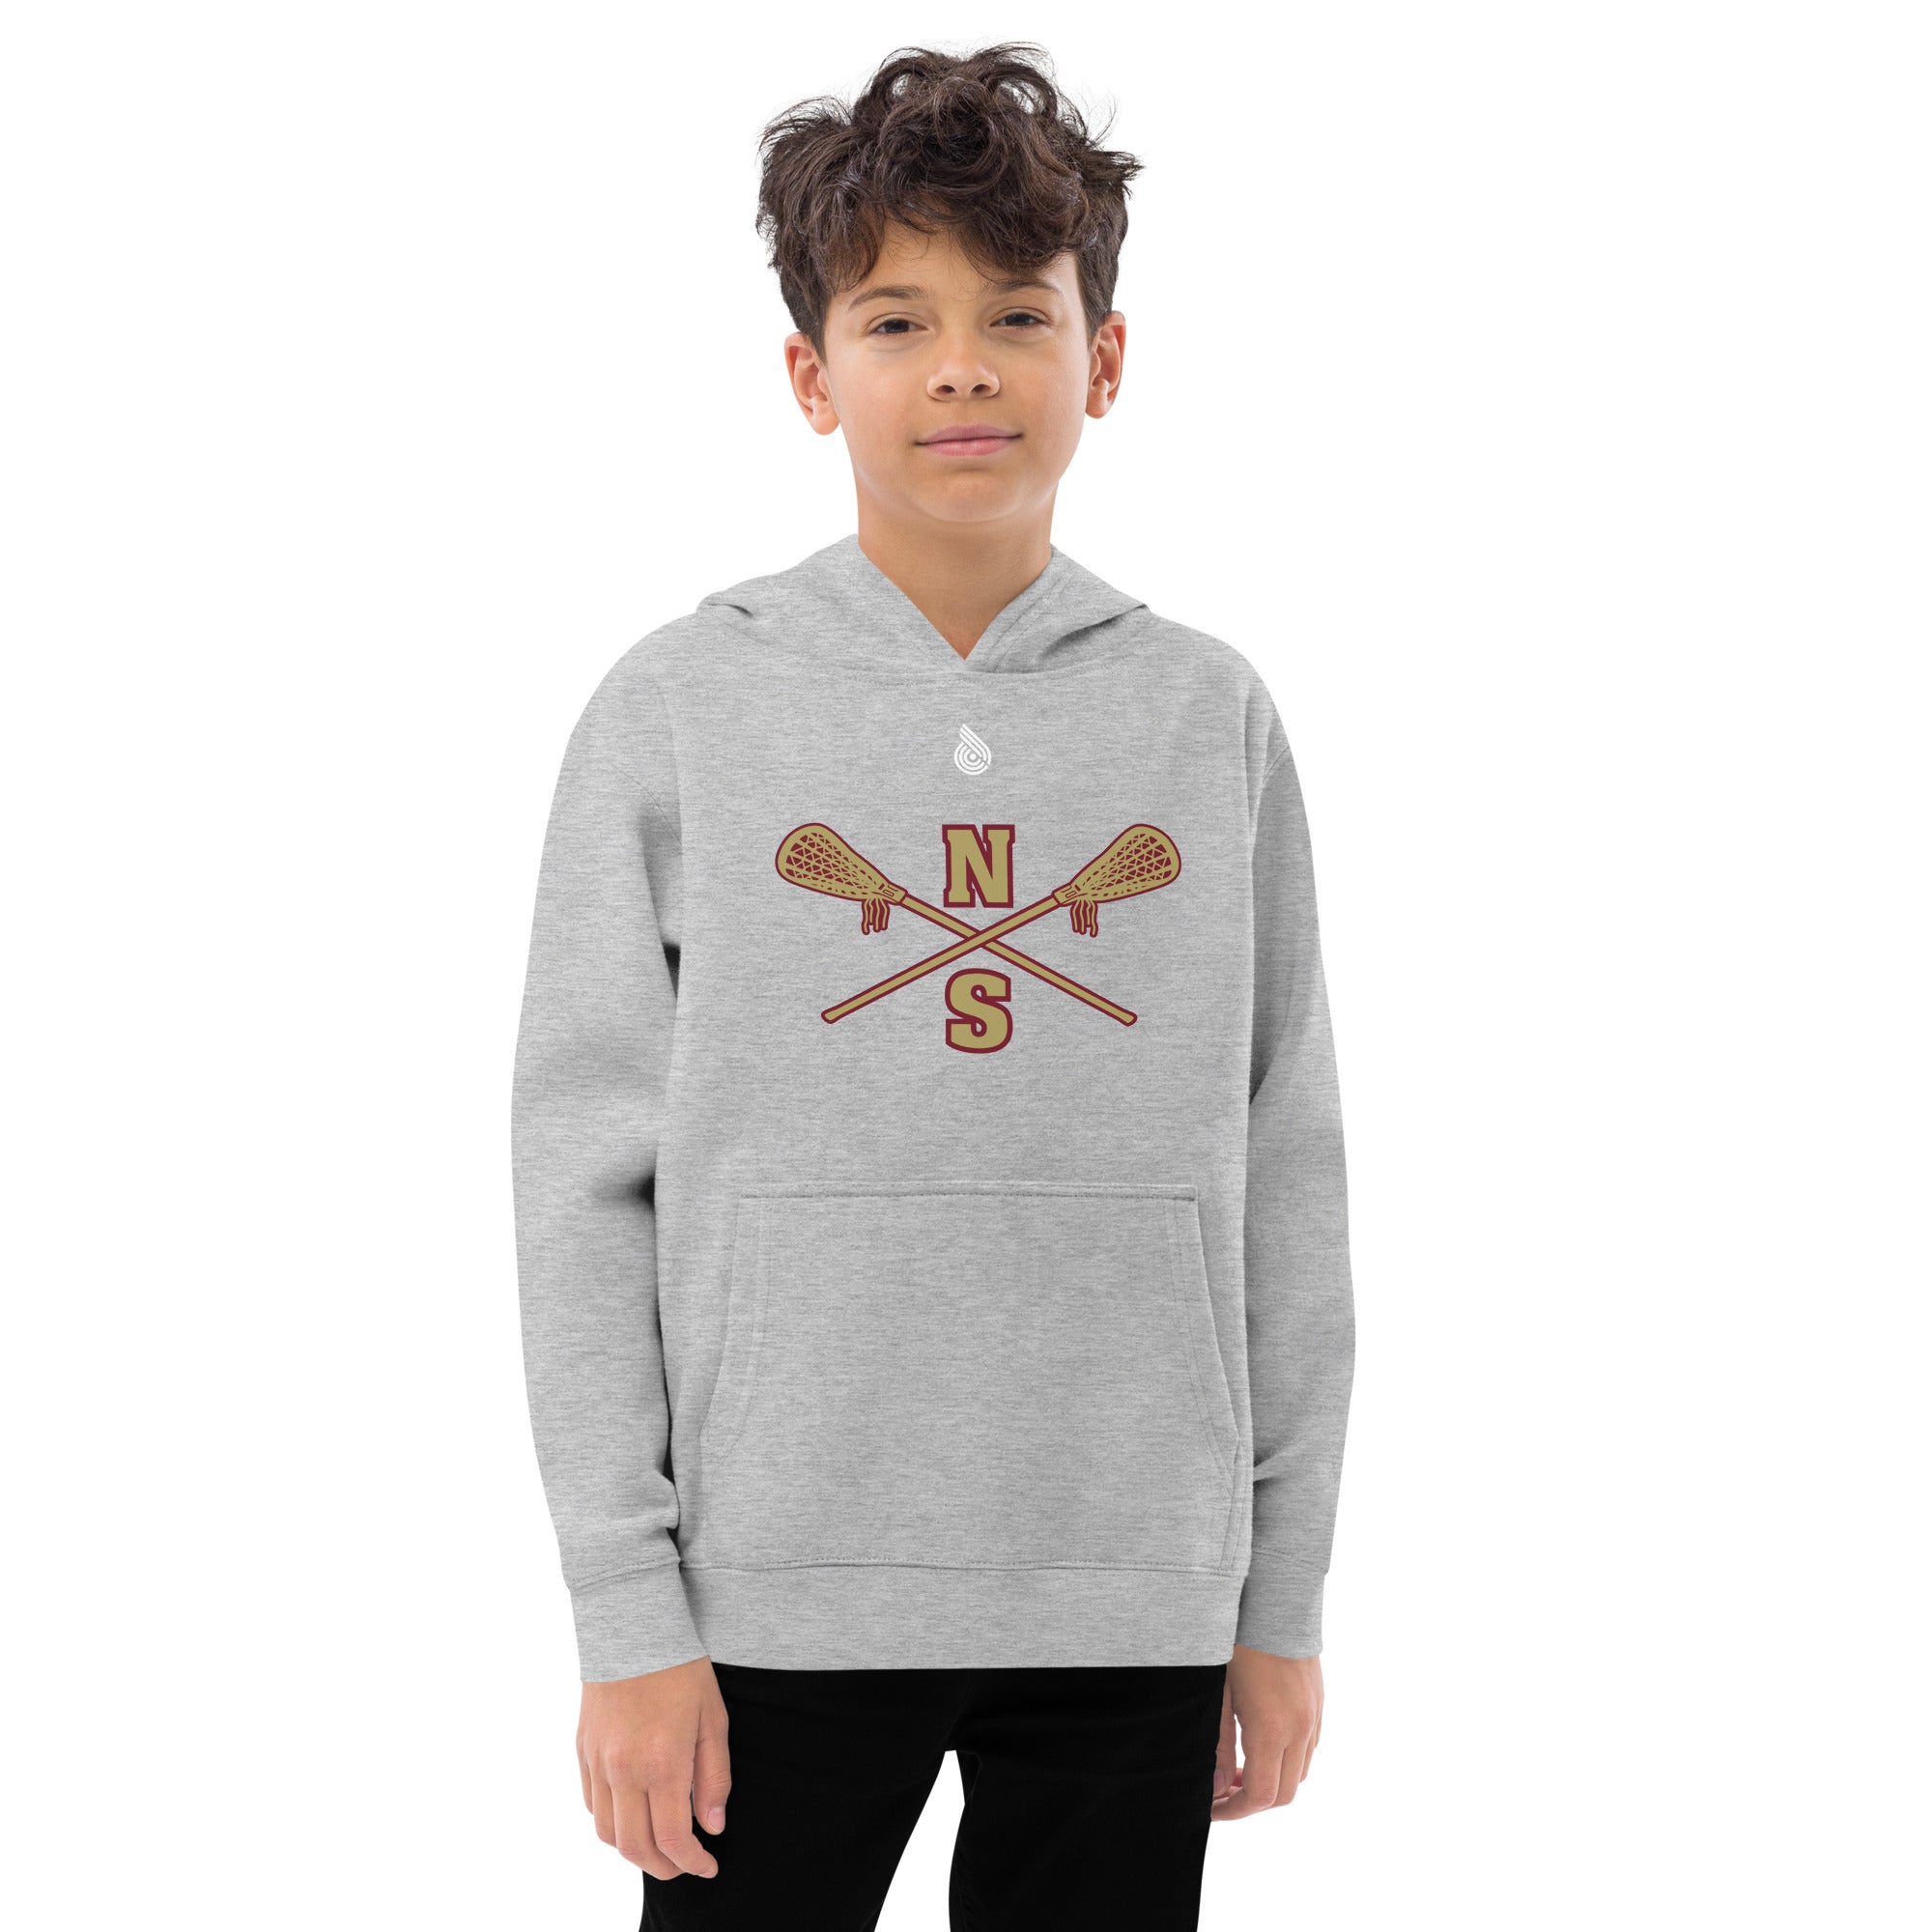 N-S Kids fleece hoodie (Boys Logo)